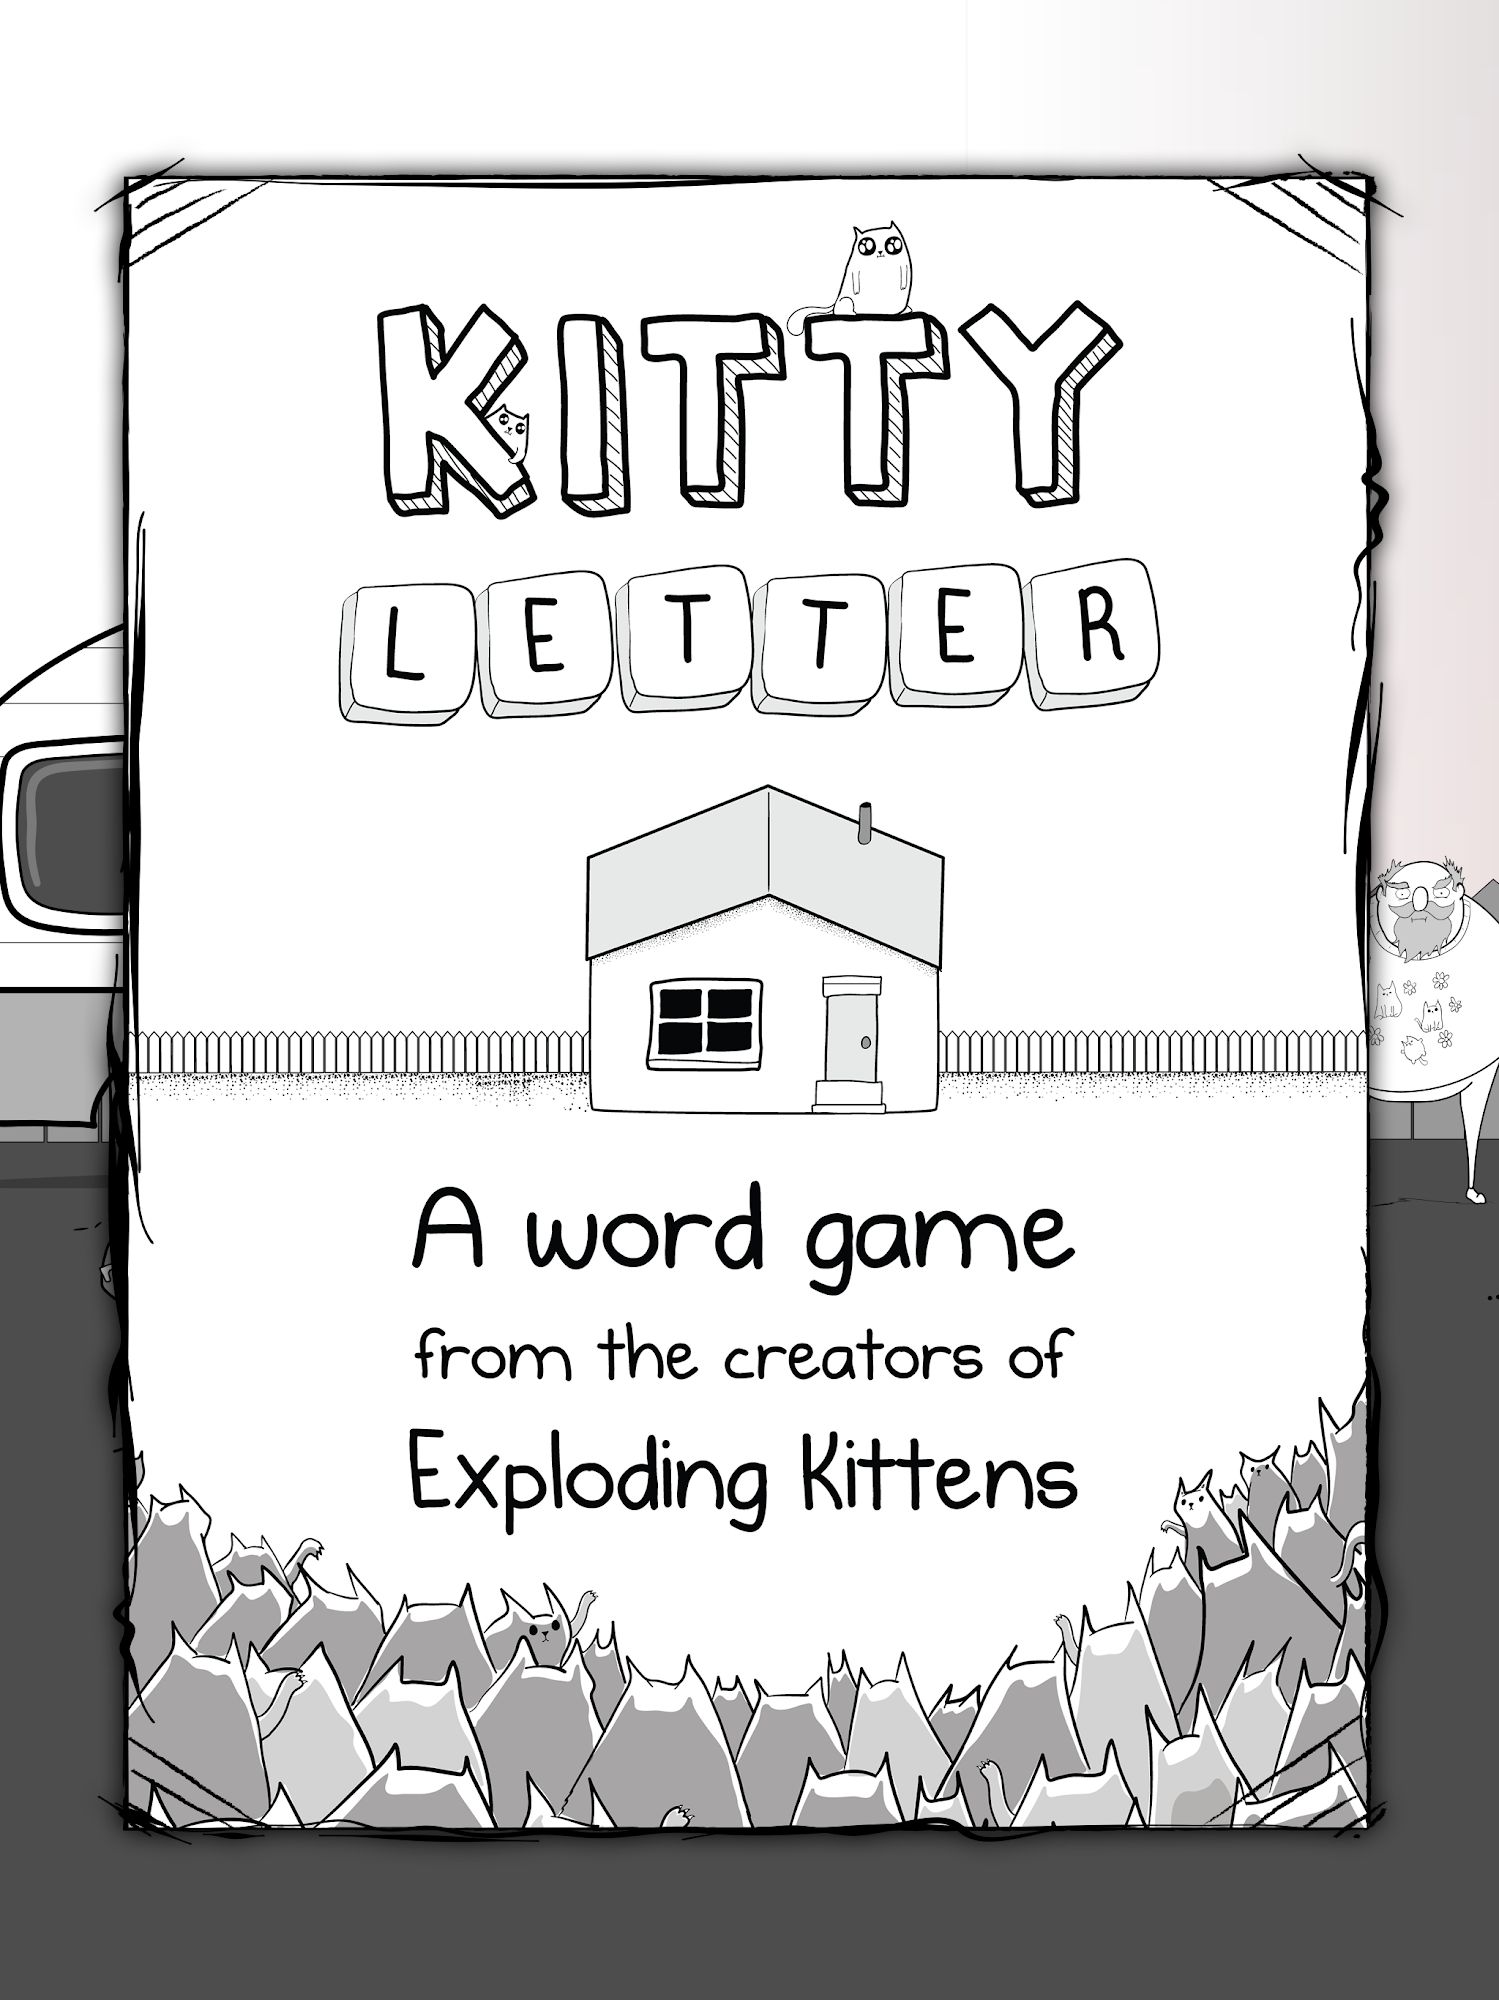 Ladda ner Kitty Letter: Android Word and Crossword Puzzles spel till mobilen och surfplatta.